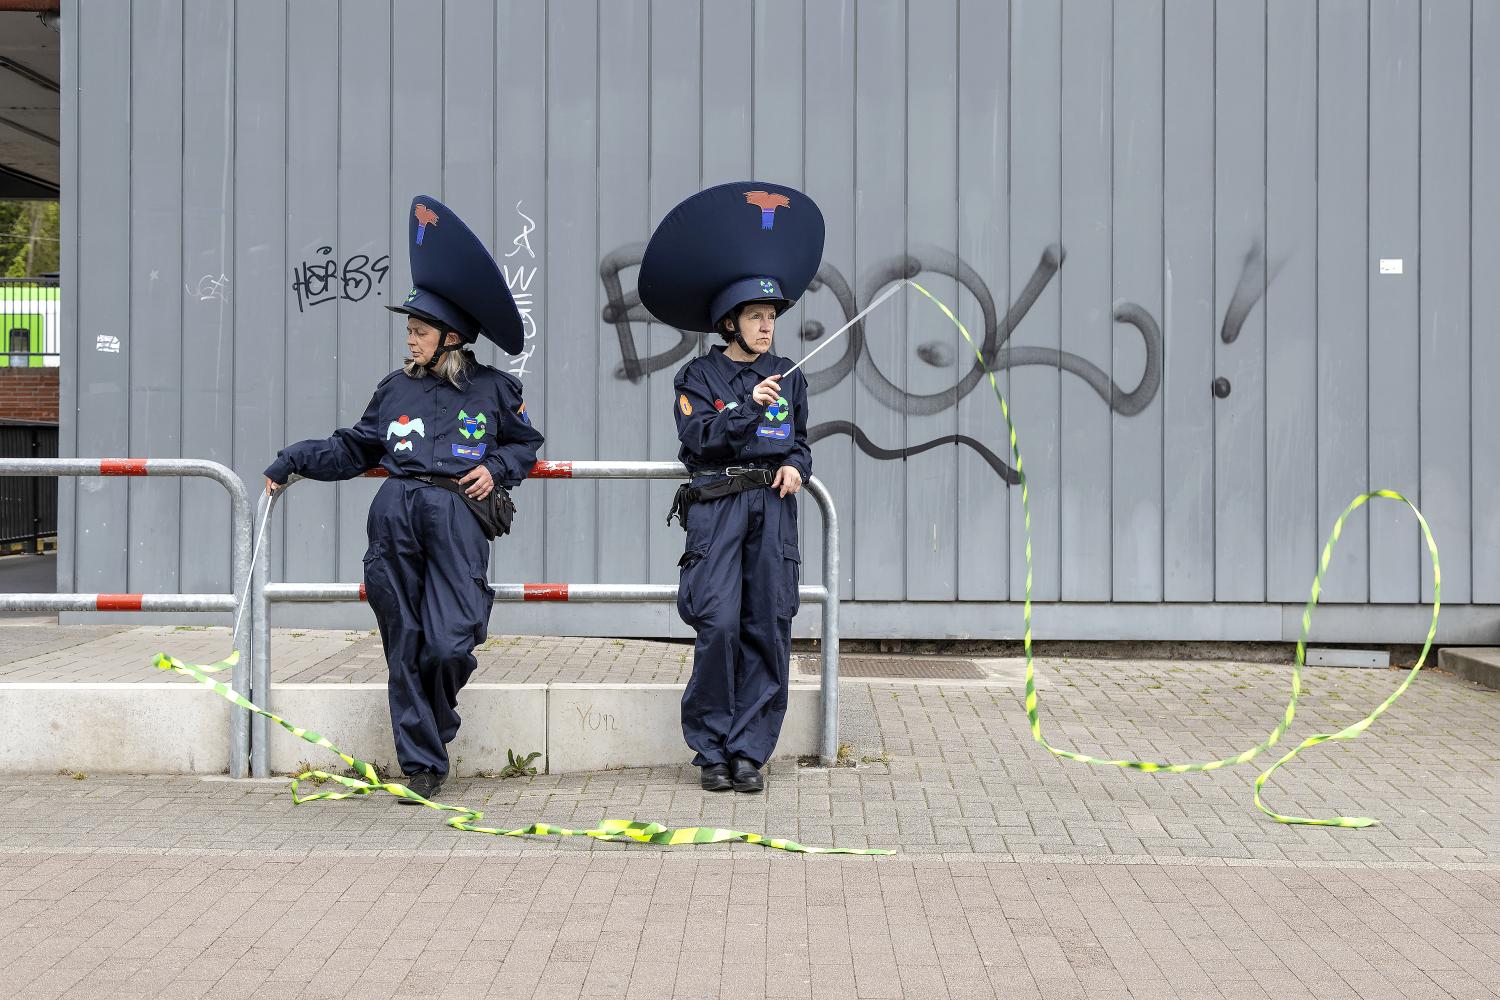 Fotografie der Performance "Disorder Patrol" von Flo Kasearu, zu sehen bei Temnikova & Kasela auf der Art Cologne 